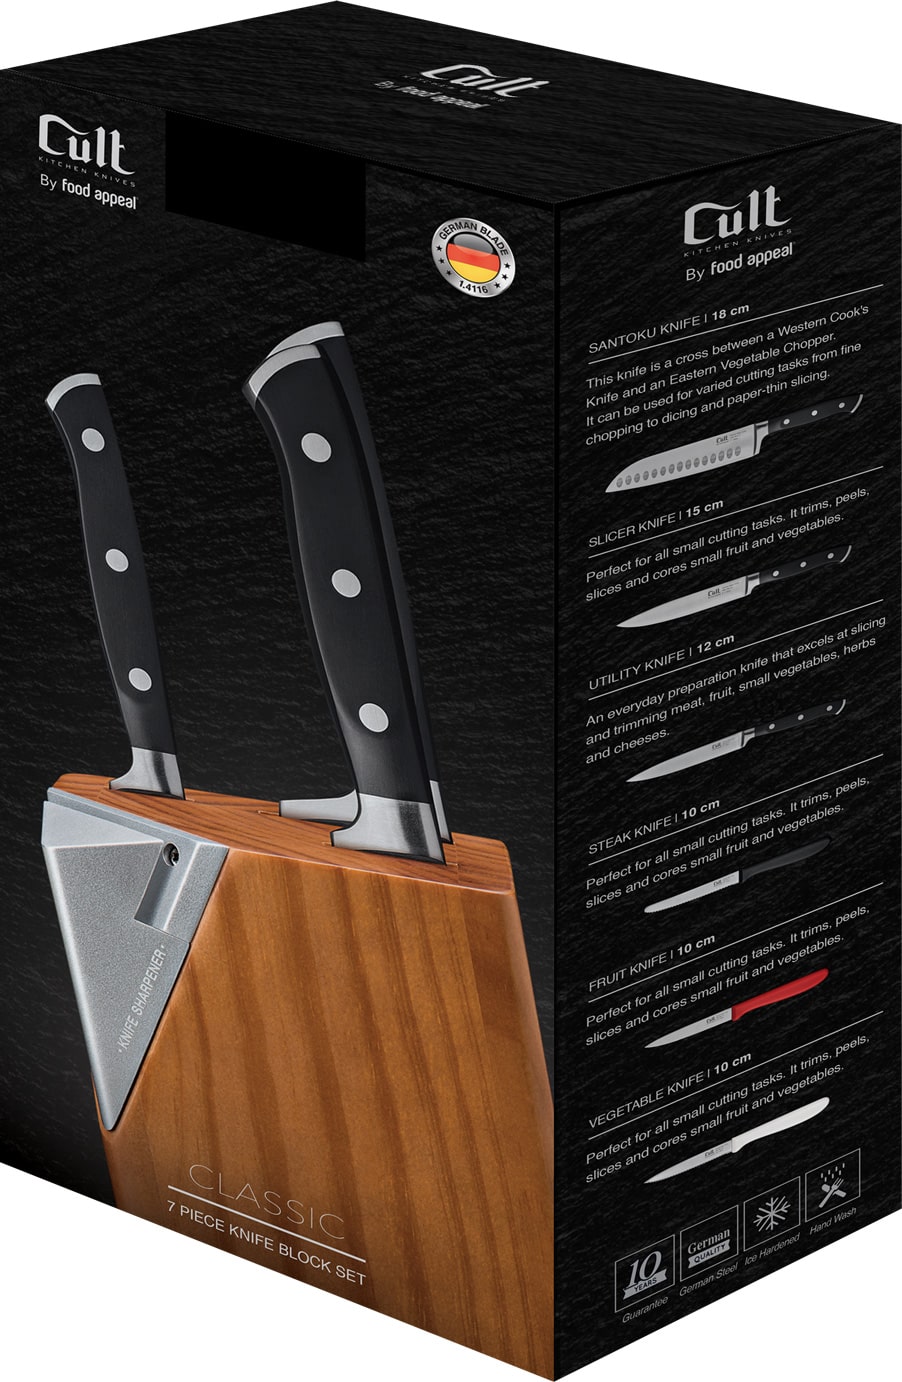 מעמד סכינים אוניברסלי עשוי עץ שיט Food Appeal Cult פוד אפיל